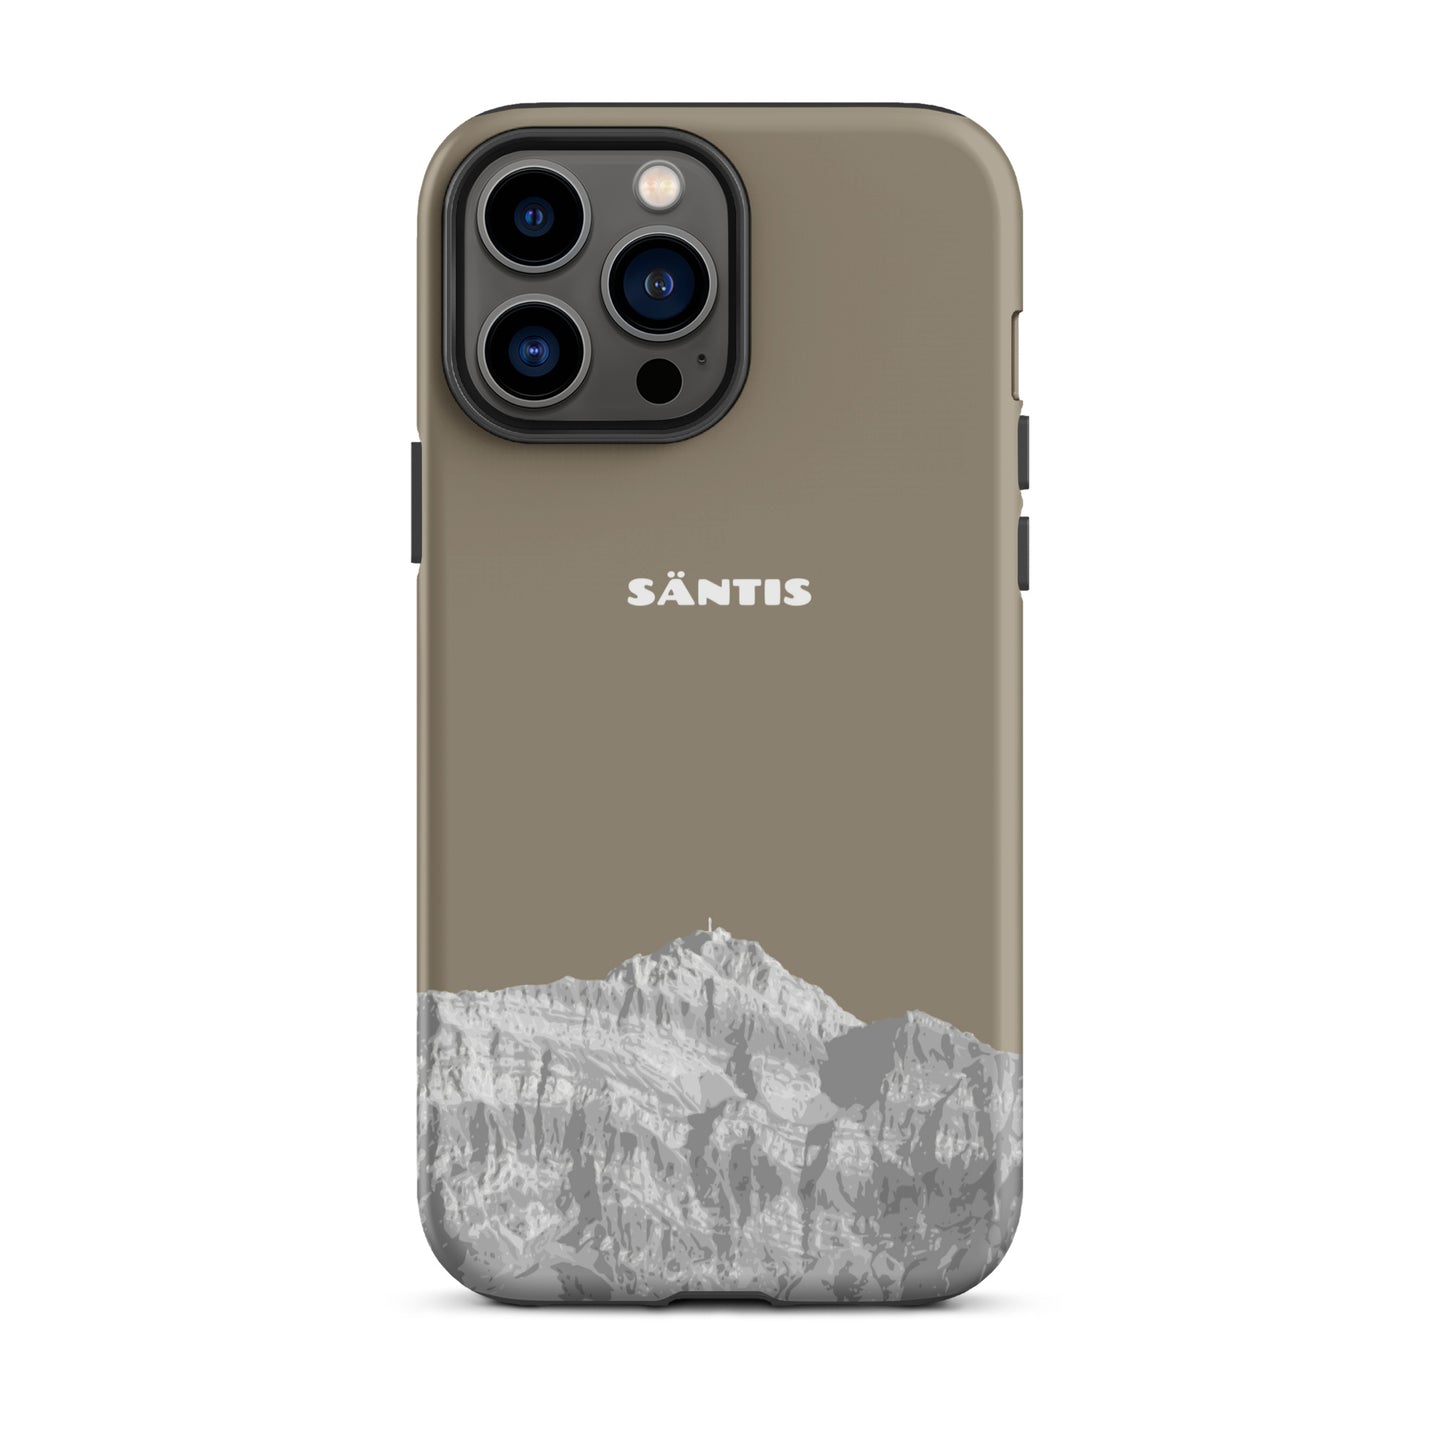 Hülle für das iPhone 13 Pro Max von Apple in der Farbe Graubraun, dass den Säntis im Alpstein zeigt.